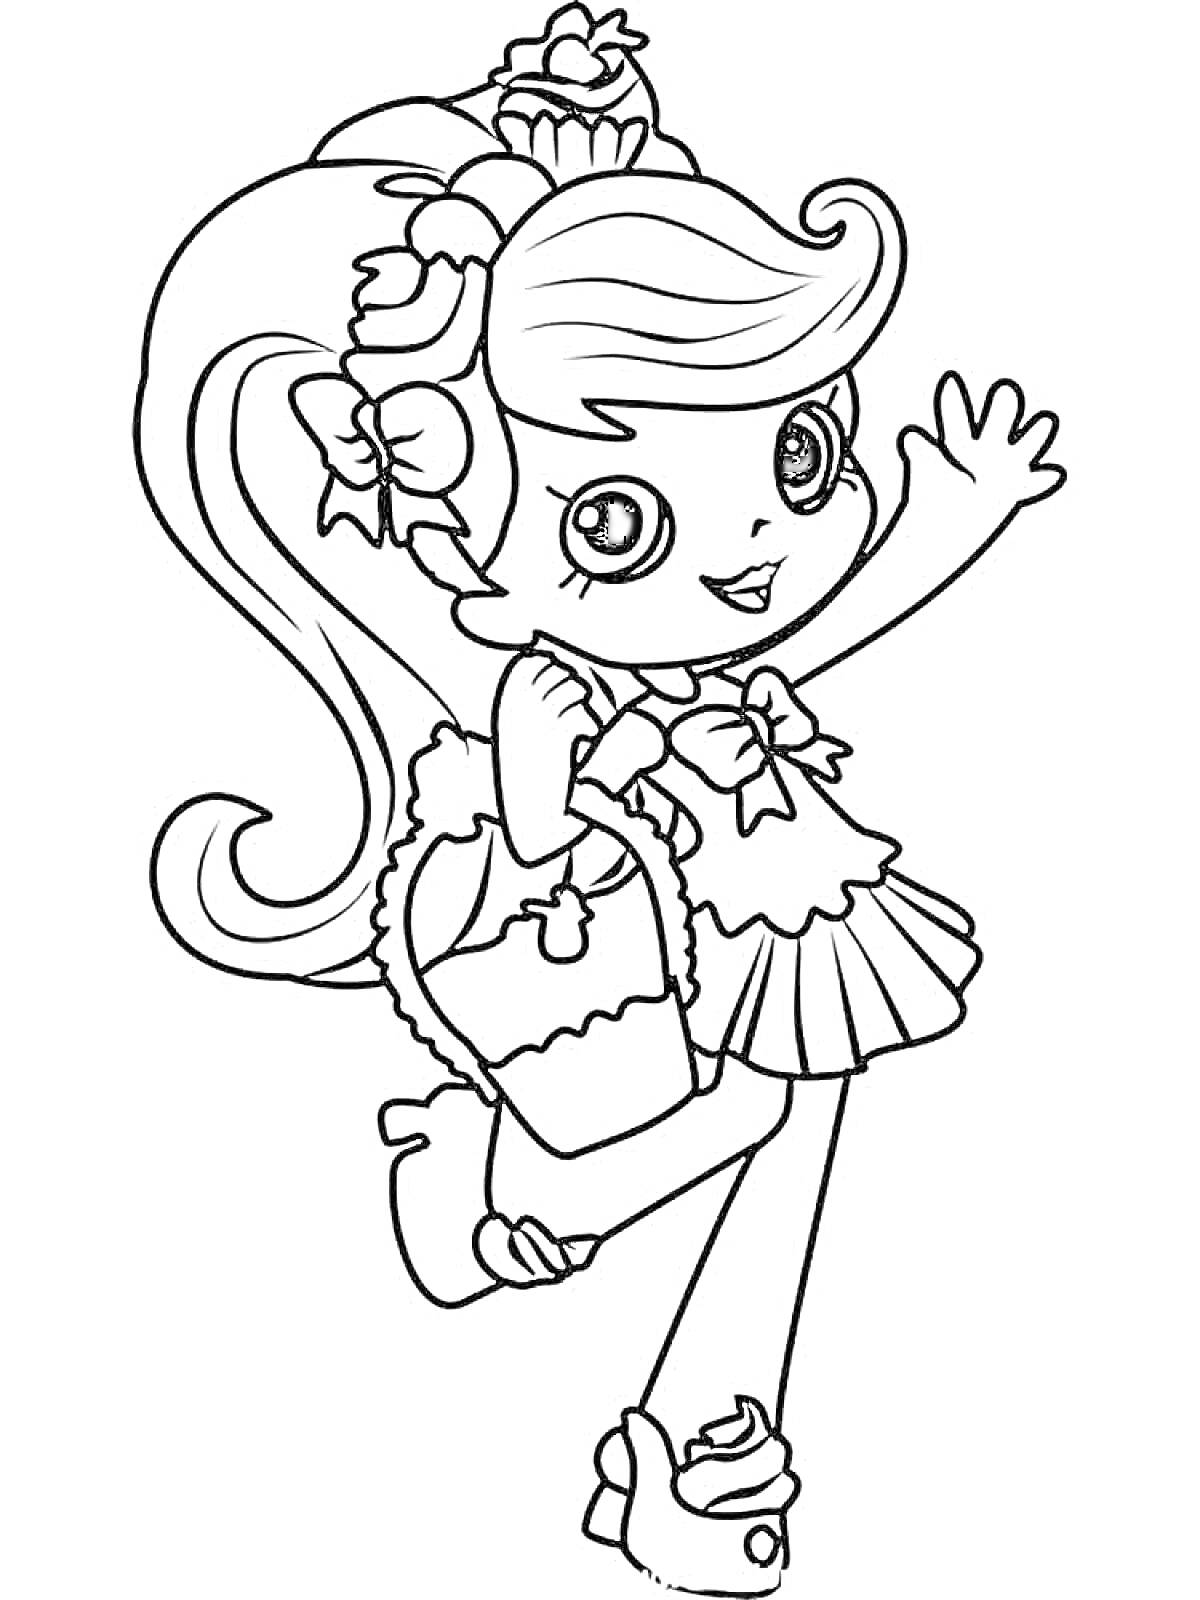 Раскраска Девочка с пышными волосами, украшенными бантиками и цветами, в платье с рюшами и босоножках, держащая сумочку, машет рукой